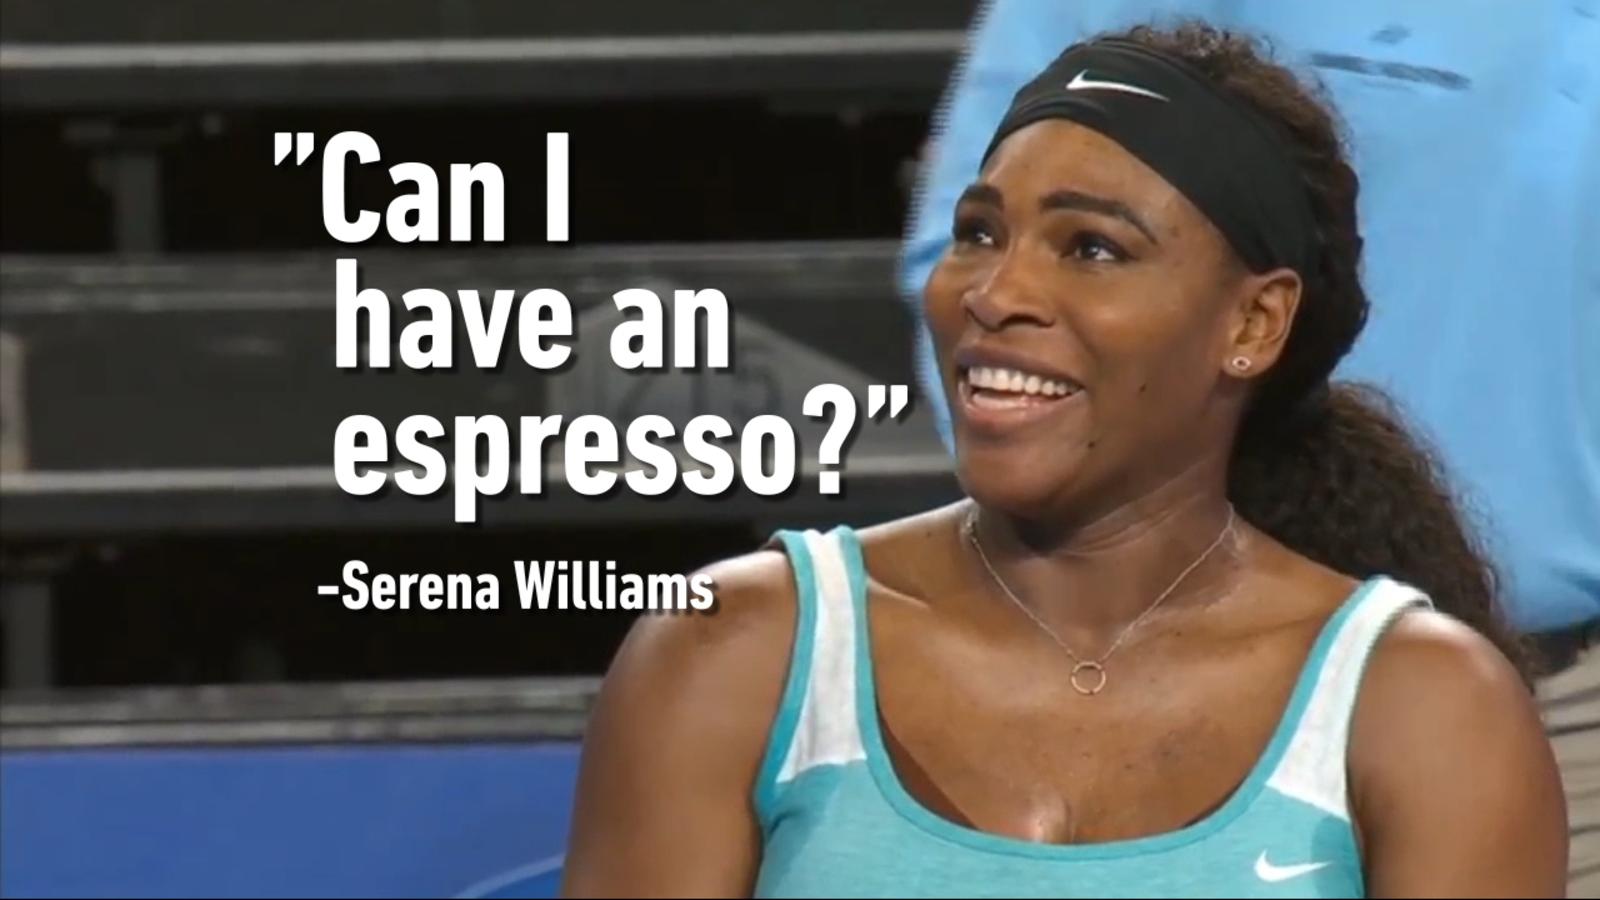 World tennis day Serena Williams incontro Flavia pennetta chiese un espresso